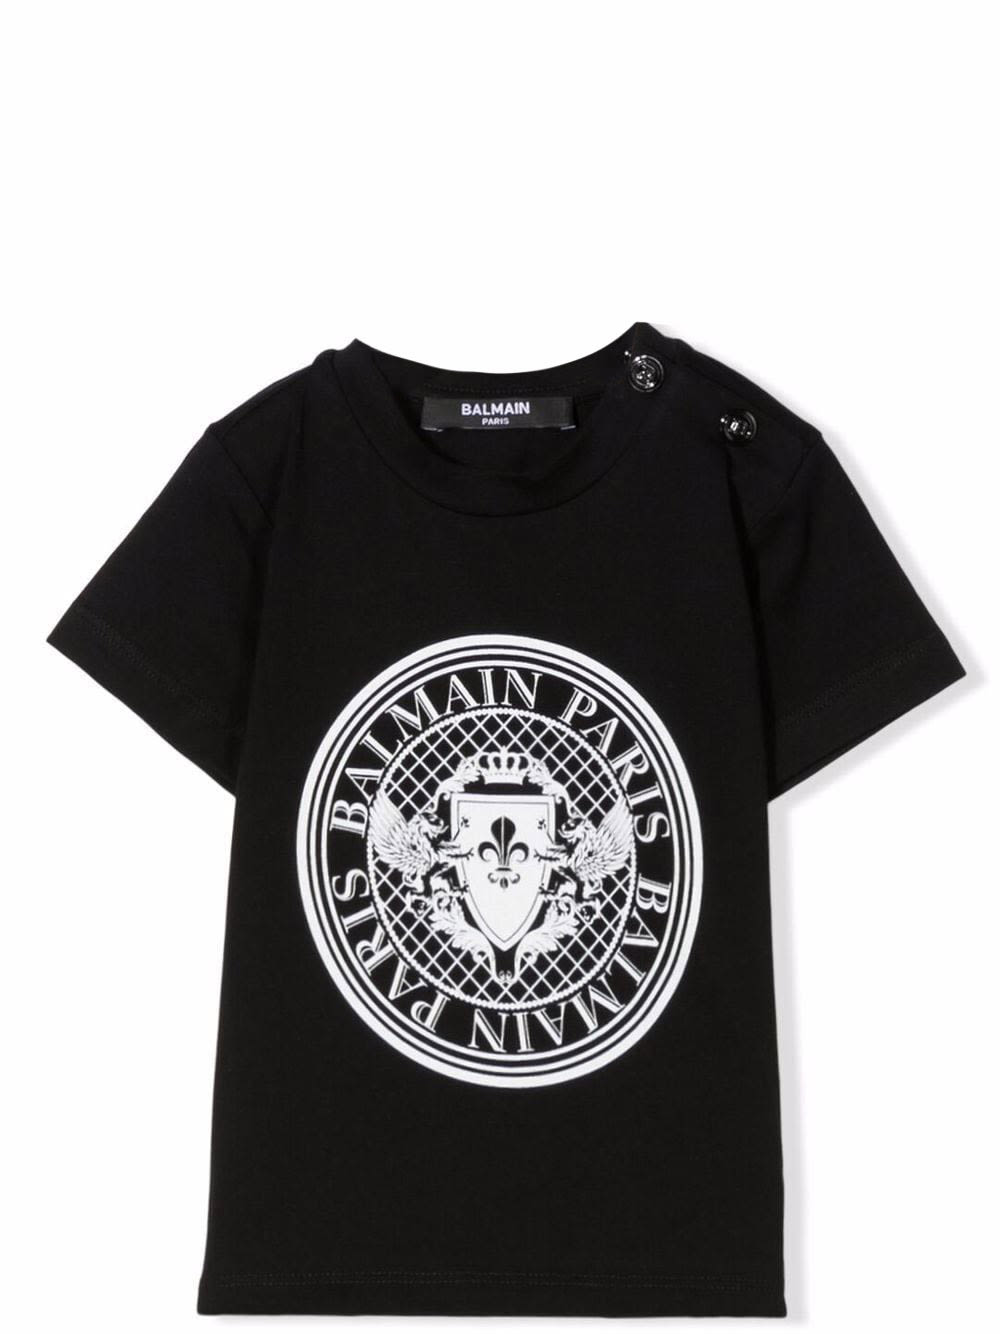 Balmain Babies' T-shirt With Logo In Nero-bianco